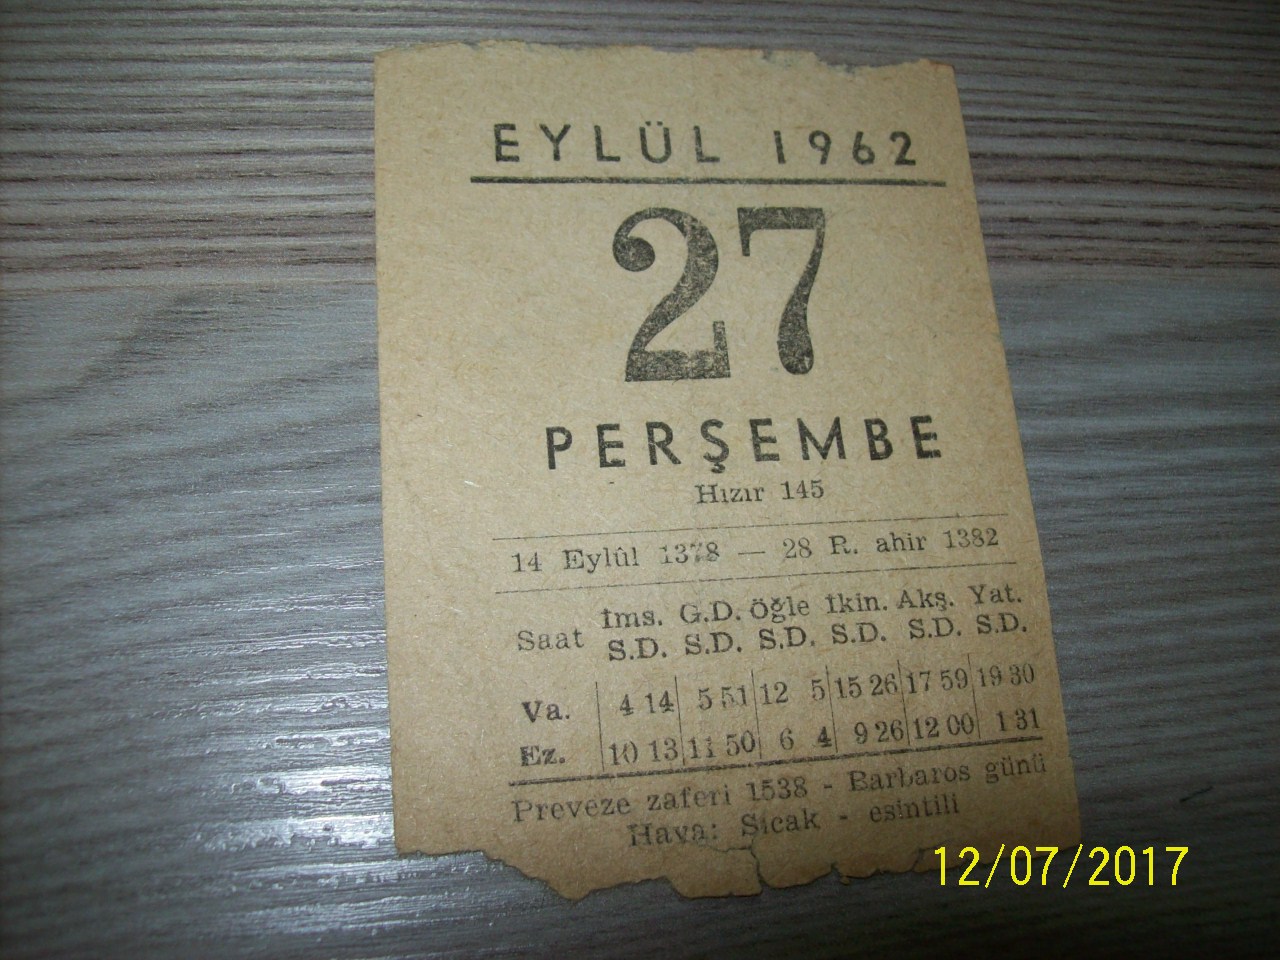 27 Eylül 1962 Perşembe - Takvim Yaprağı